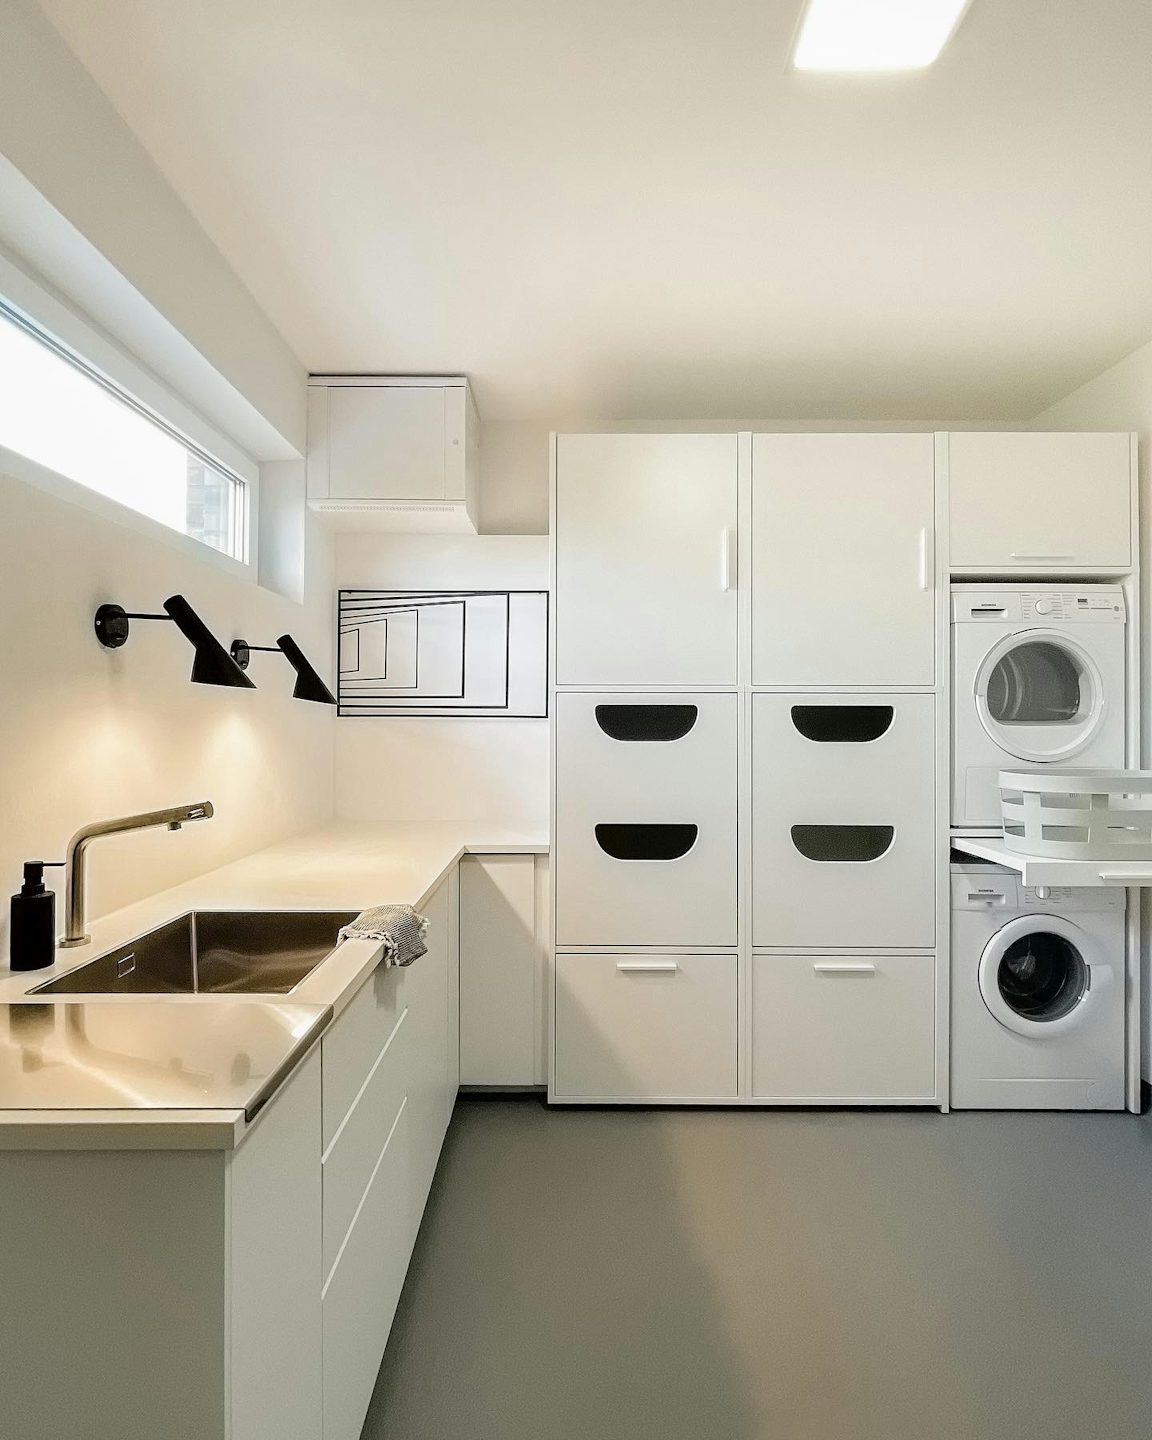 wasmachine kast wit bijkeuken inspiratie droger en wasmachine op elkaar met uitschuiflade en inzet stuk voor wasmanden en opbergkasten